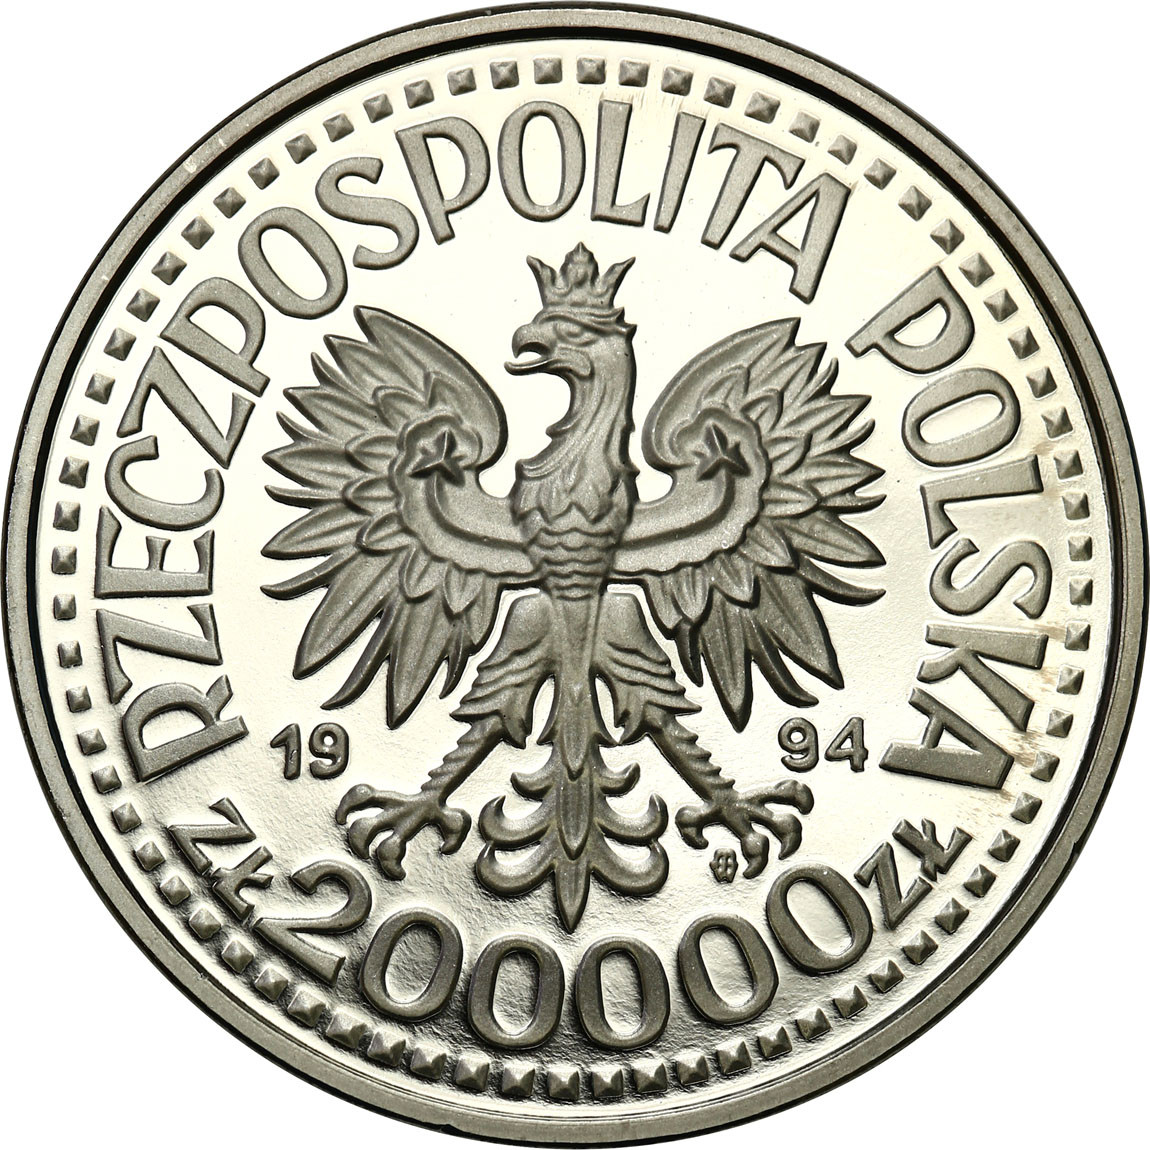 PRL. PRÓBA Nikiel 200 000 złotych 1994 – Zygmunt I Stary - popiersie